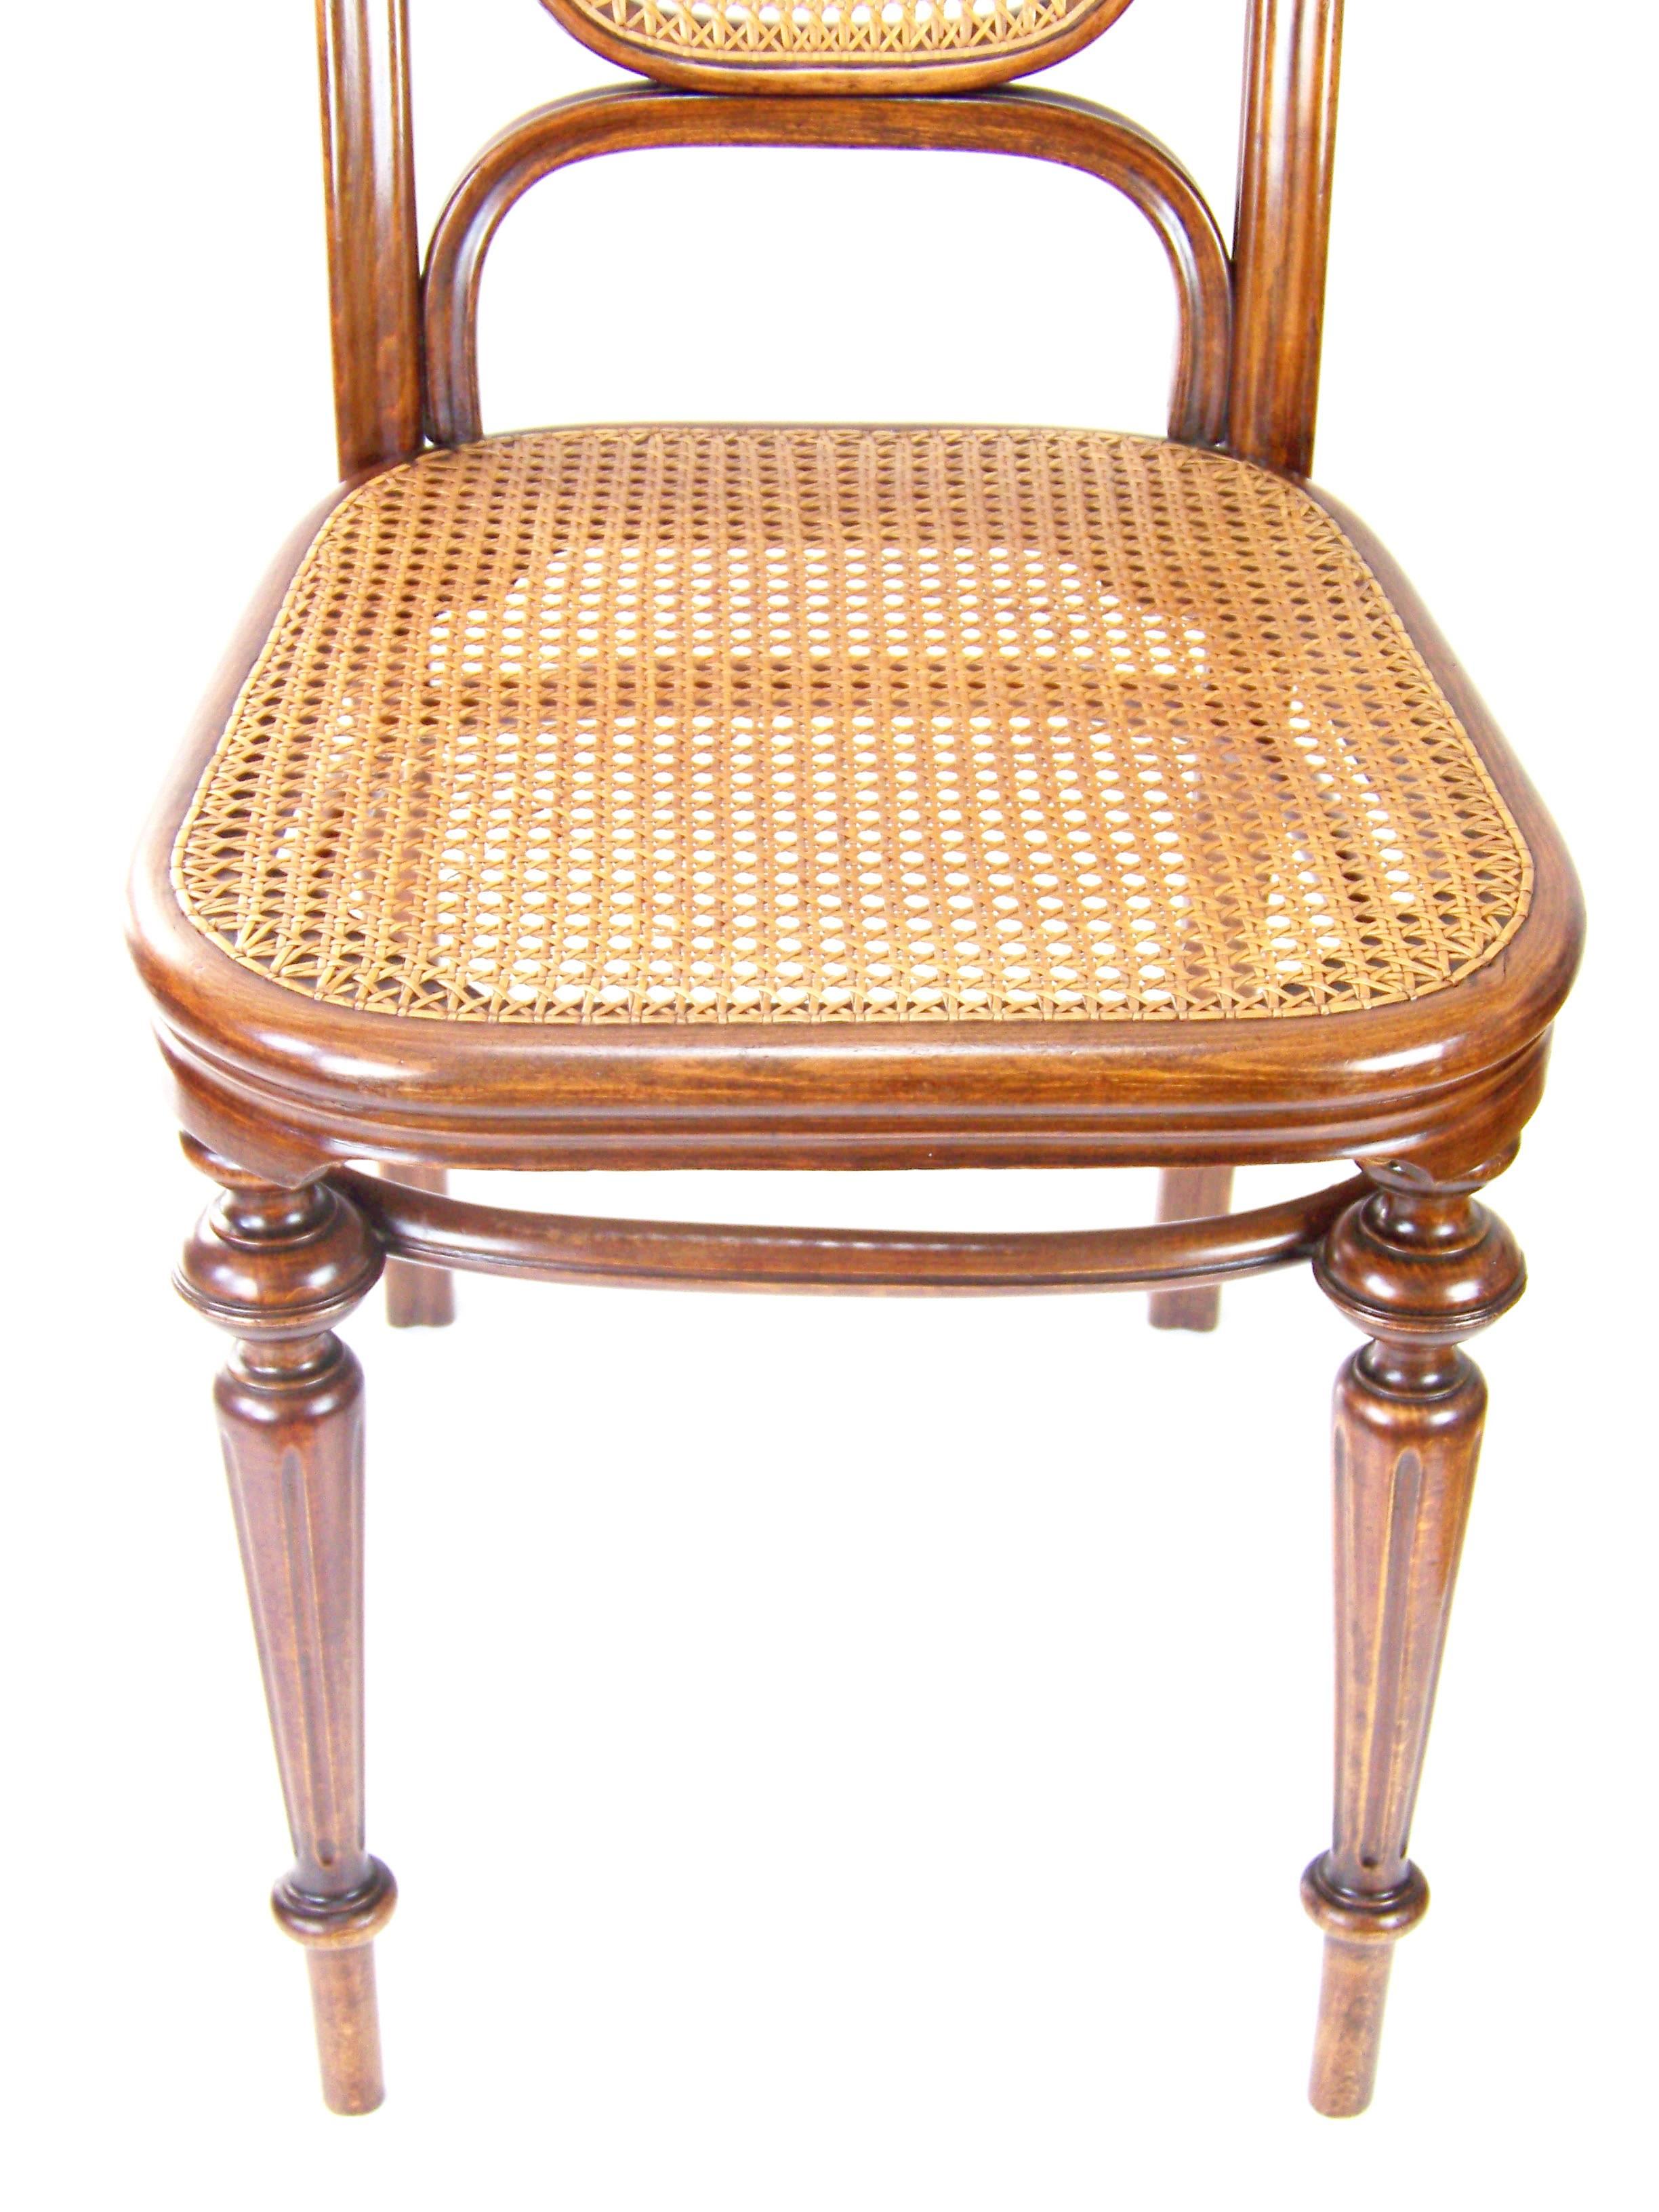 Art Nouveau Chair Thonet Nr.32, circa 1883